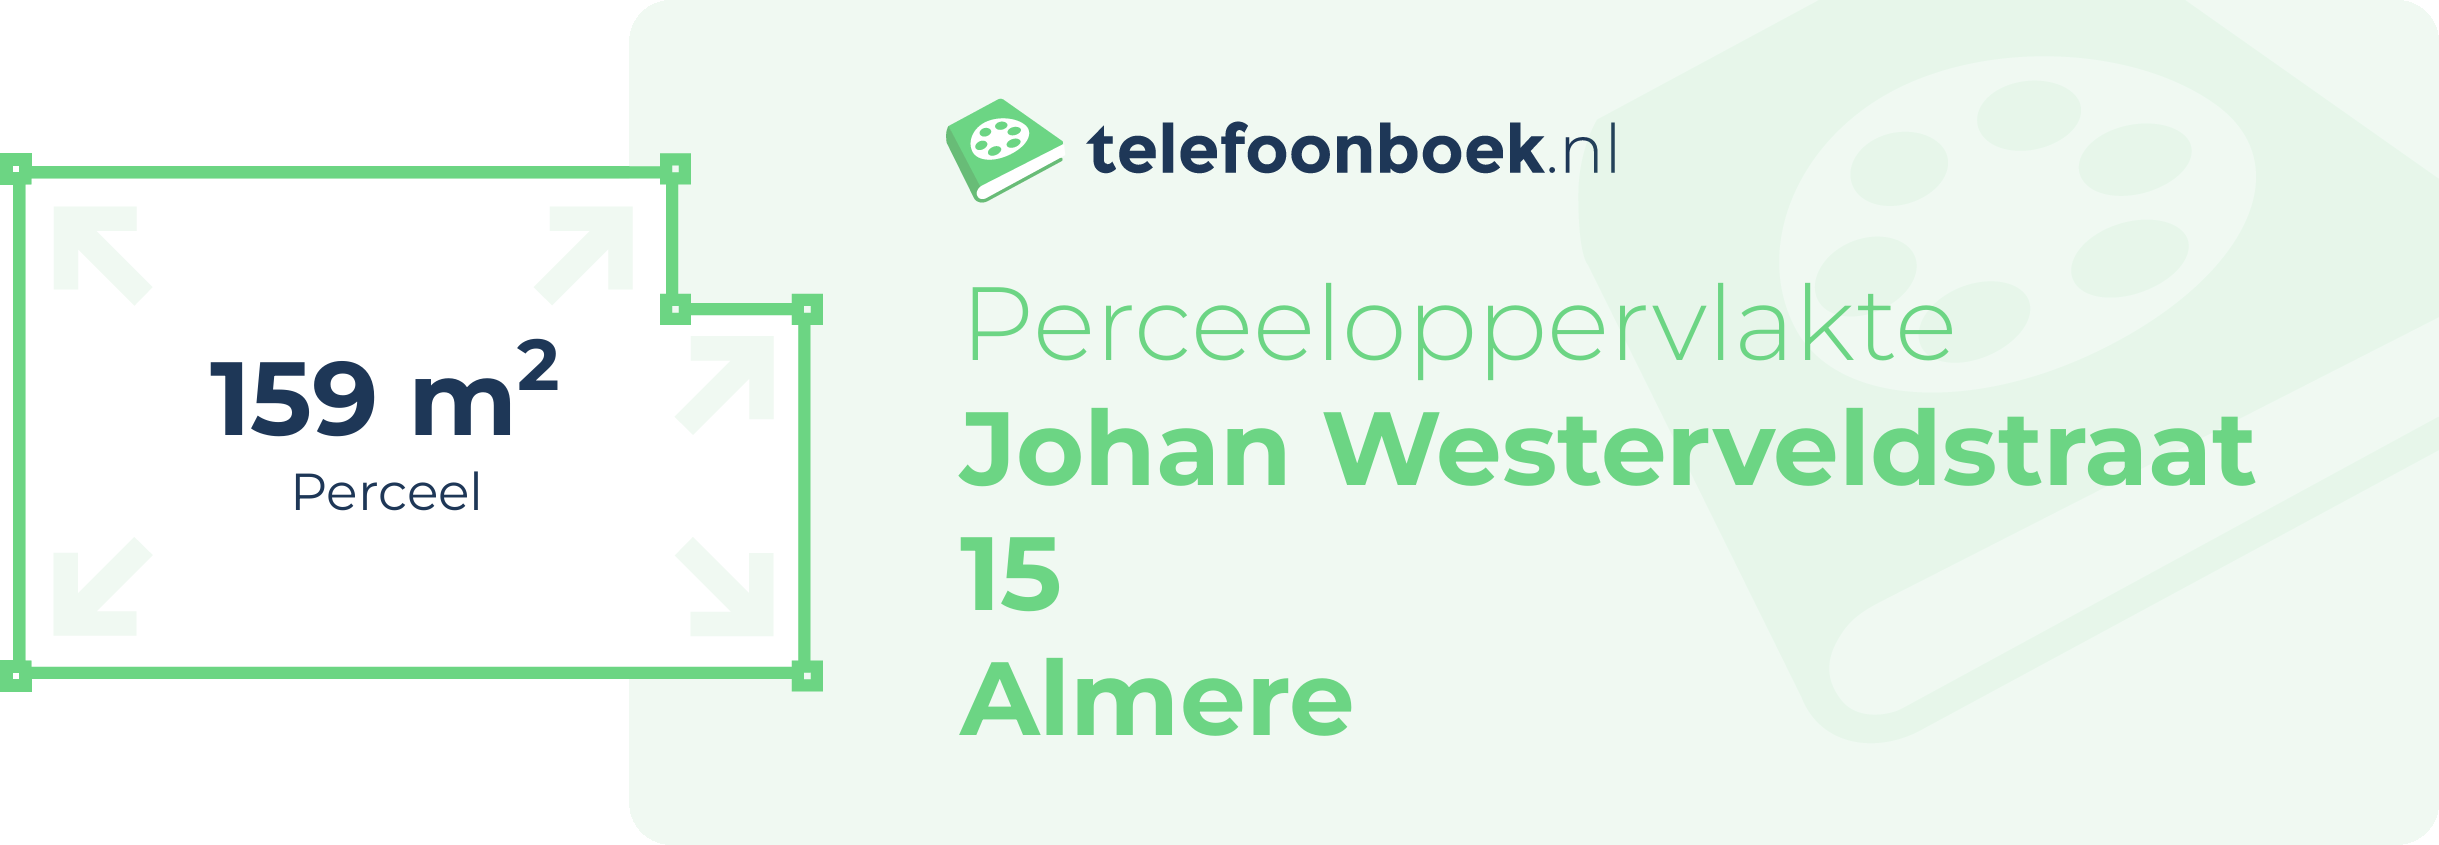 Perceeloppervlakte Johan Westerveldstraat 15 Almere